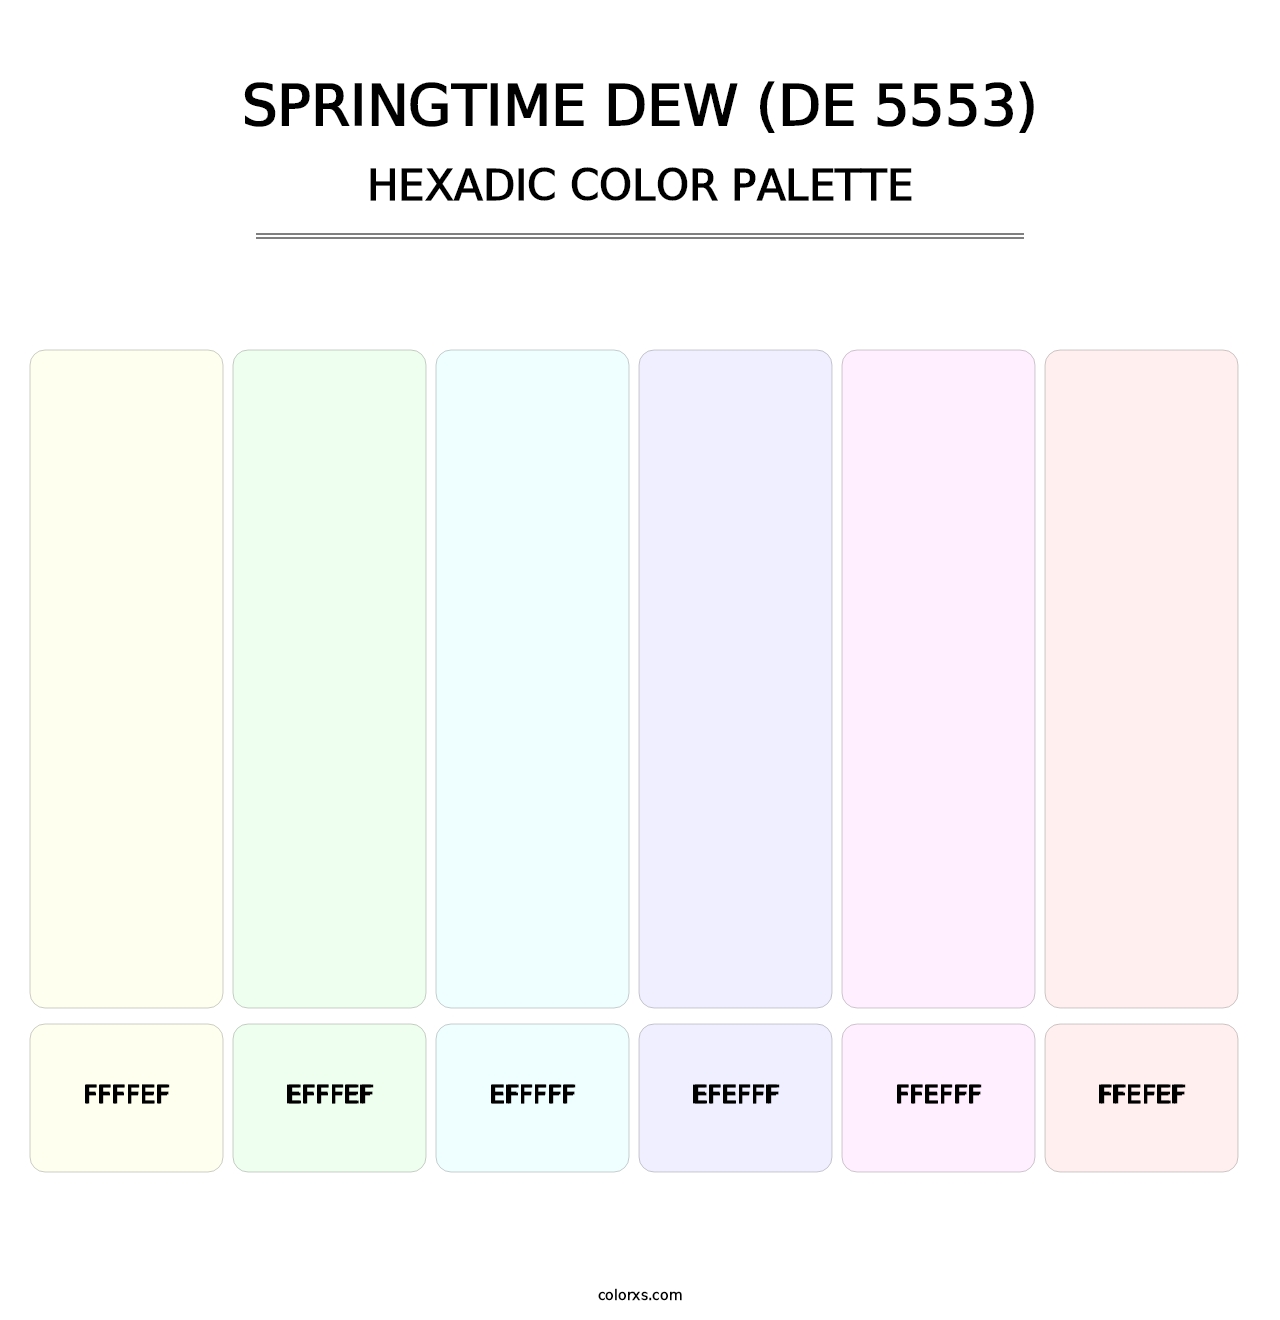 Springtime Dew (DE 5553) - Hexadic Color Palette